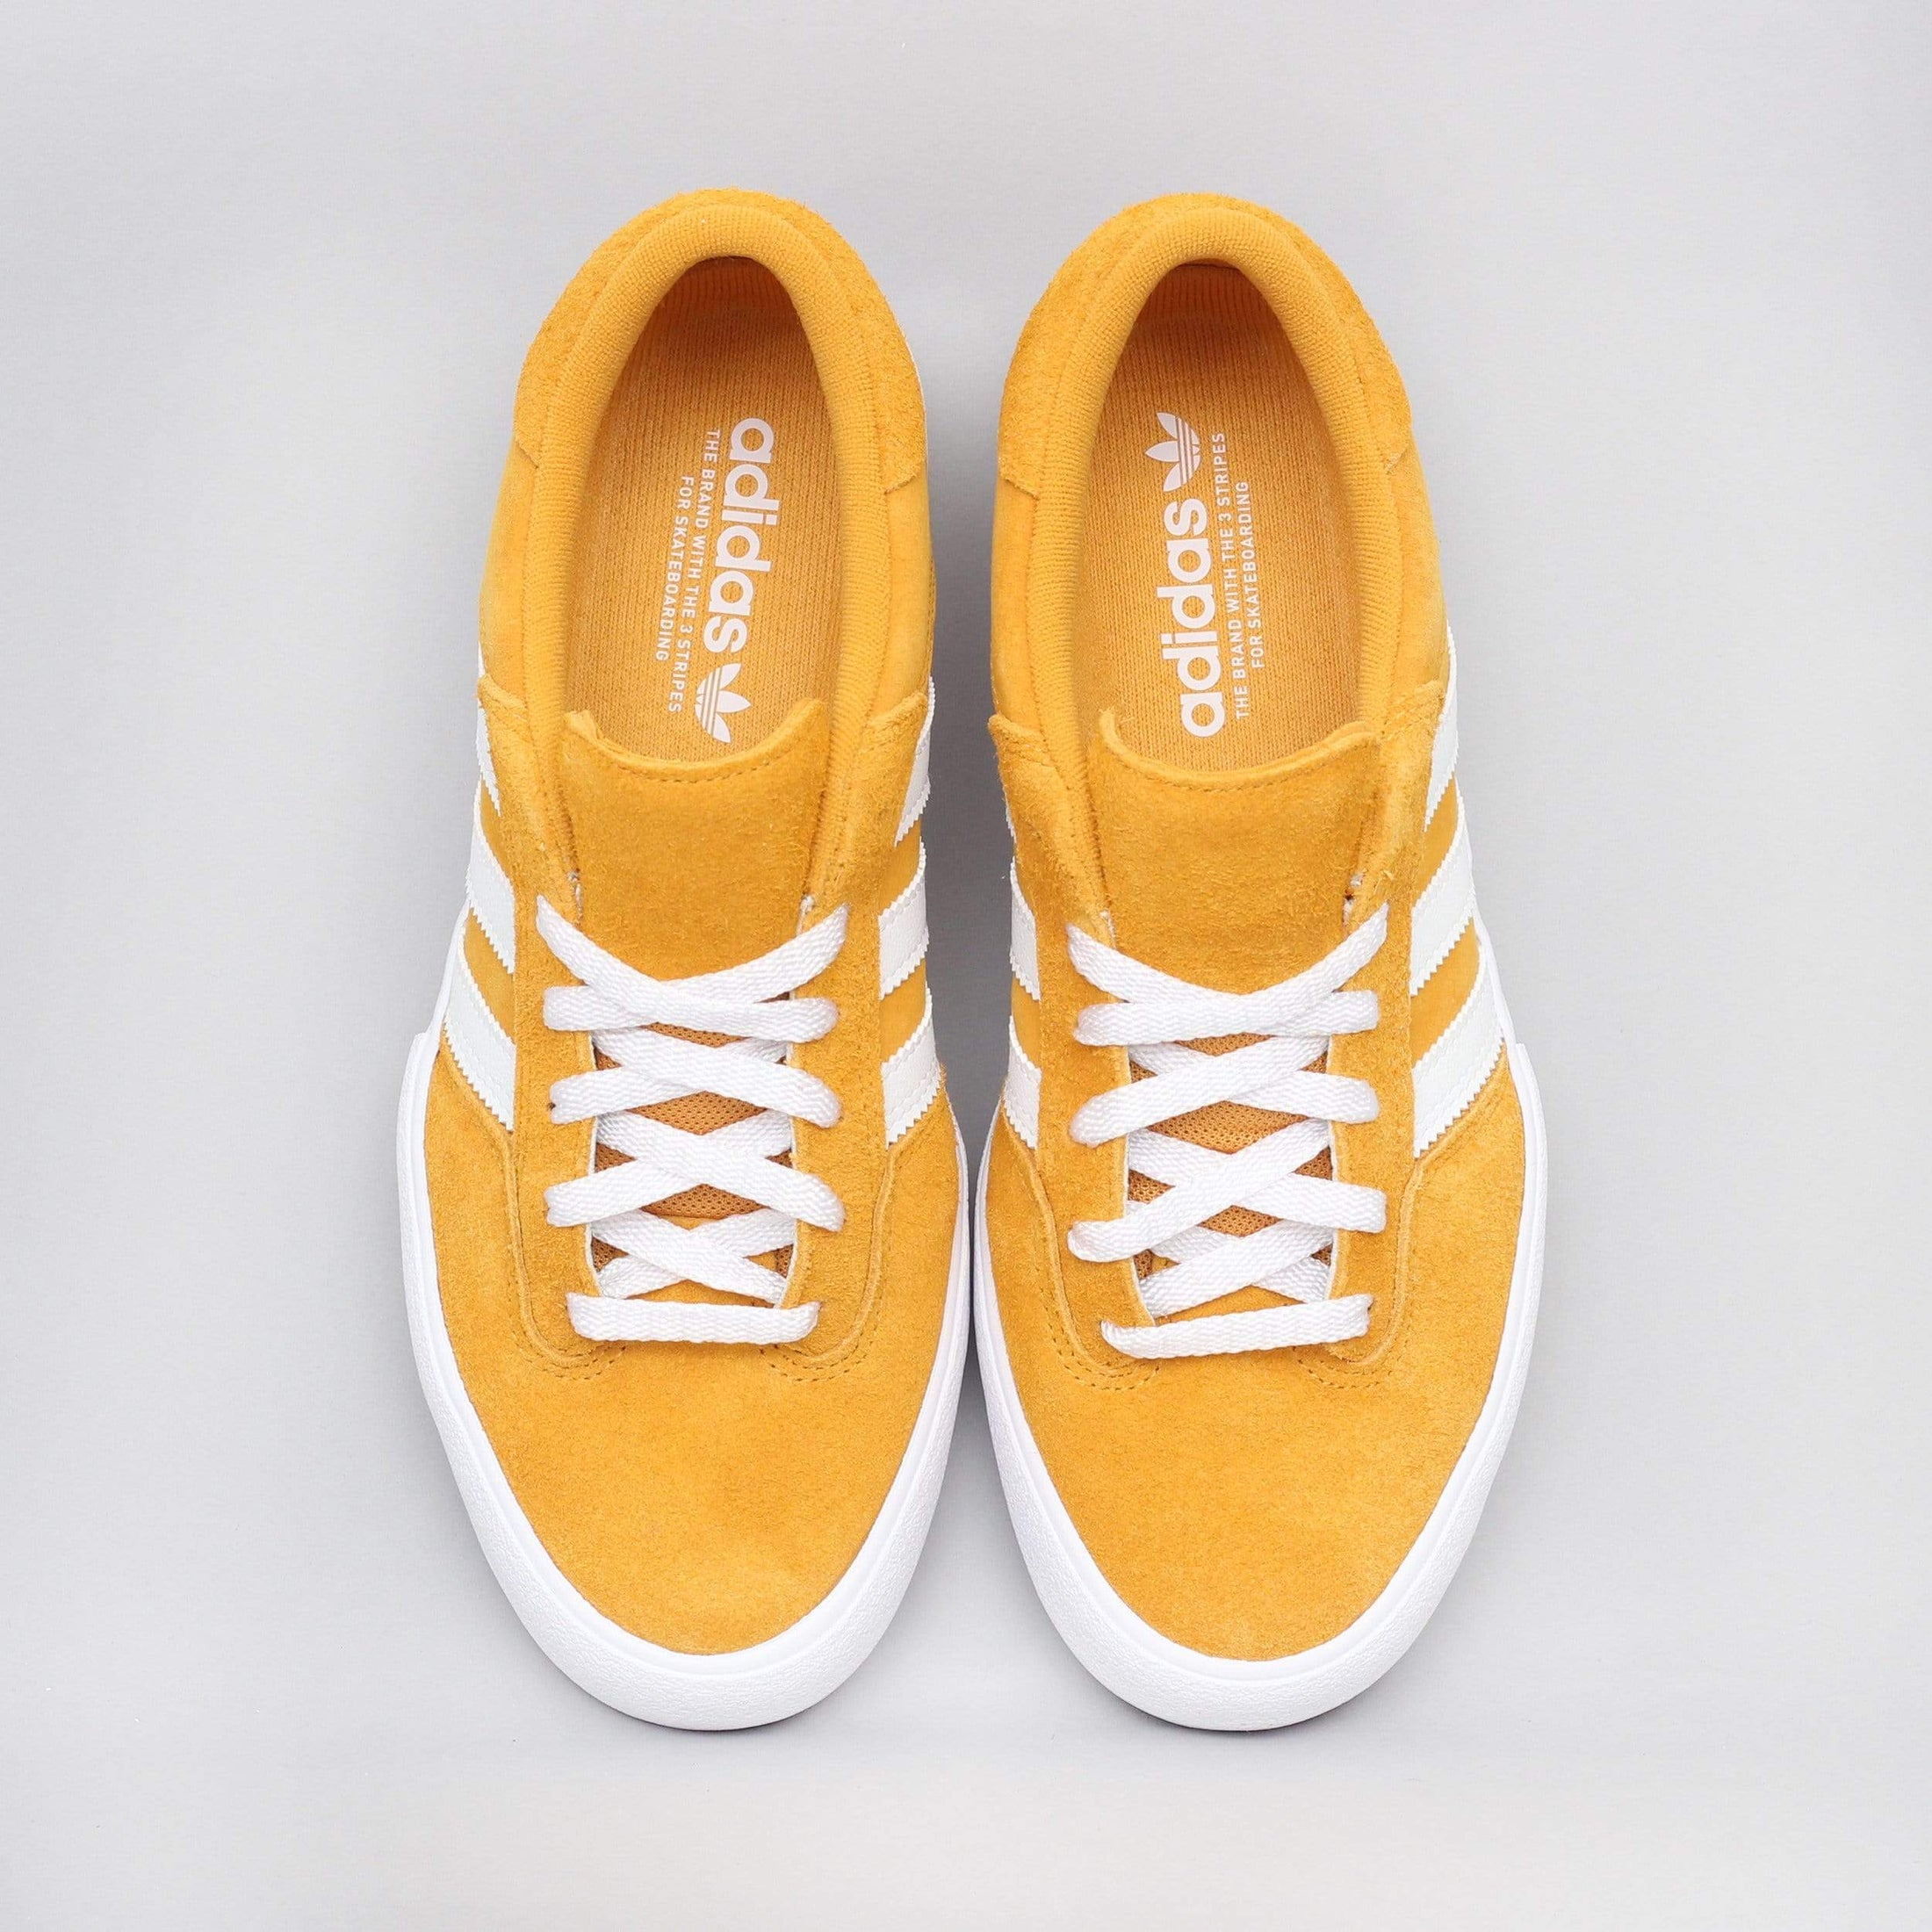 adidas Matchbreak Super Shoes Tactile Yellow / Footwear White / Gold Metallic